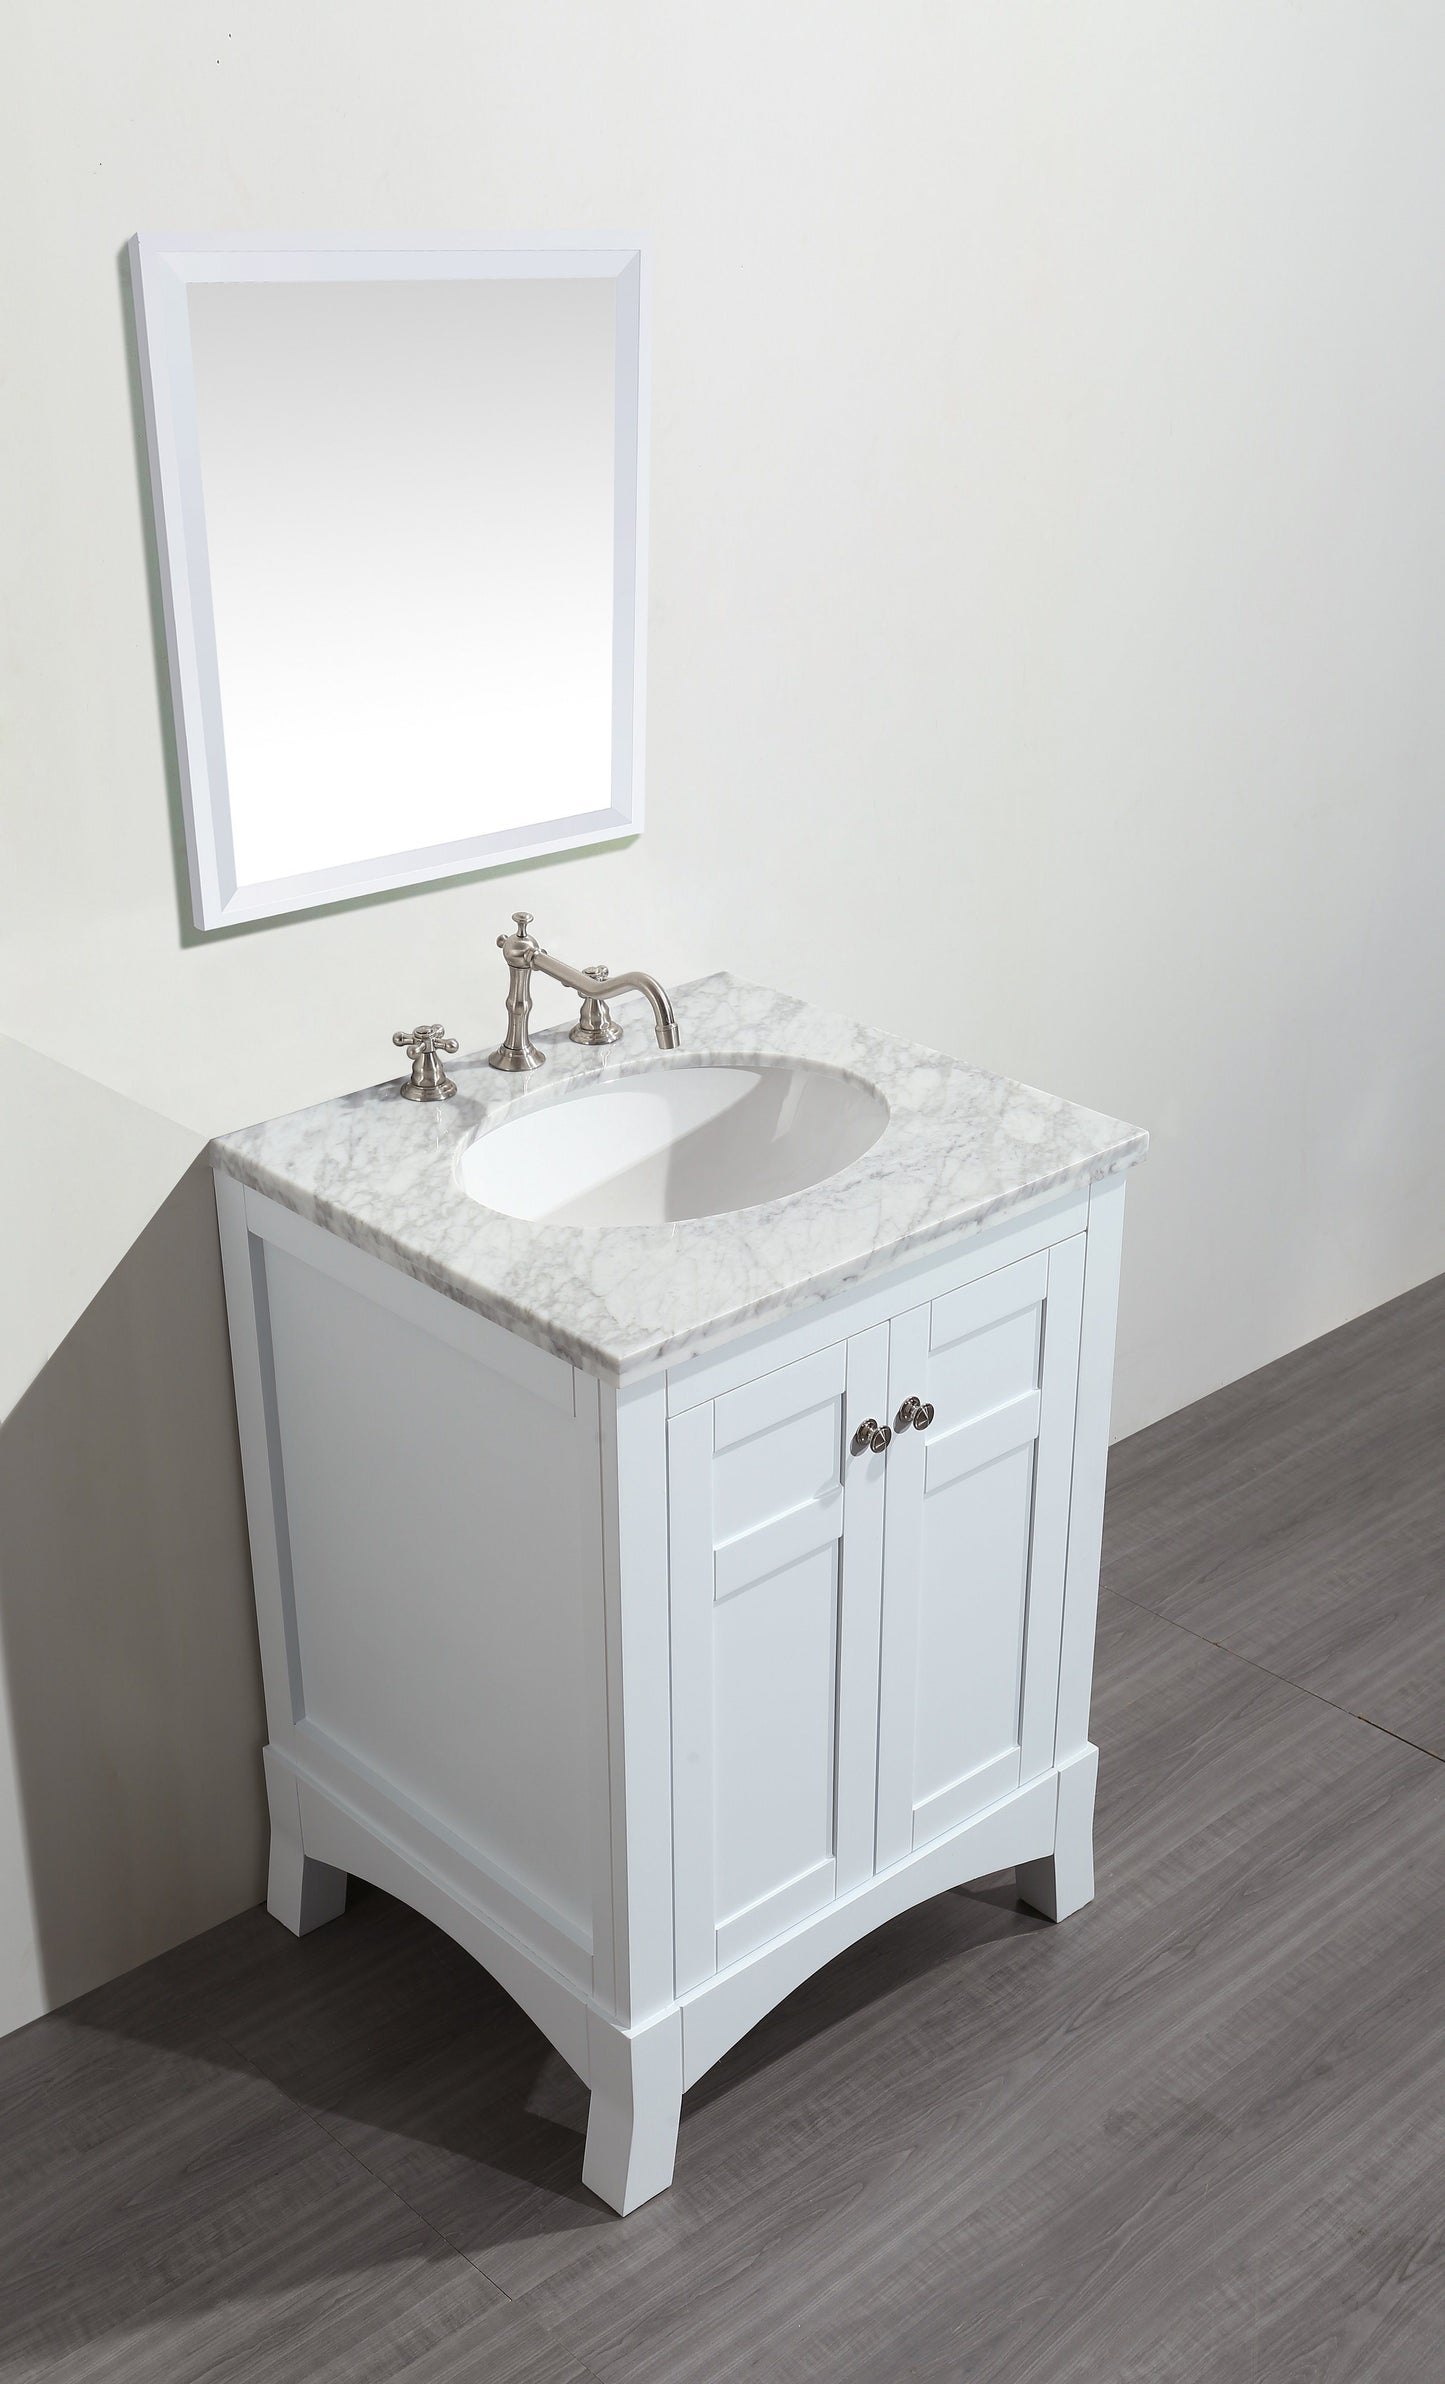 Eviva New York 24" Bathroom Vanity, with White Marble Carrera Counter-top, & Sink - Luxe Bathroom Vanities Luxury Bathroom Fixtures Bathroom Furniture